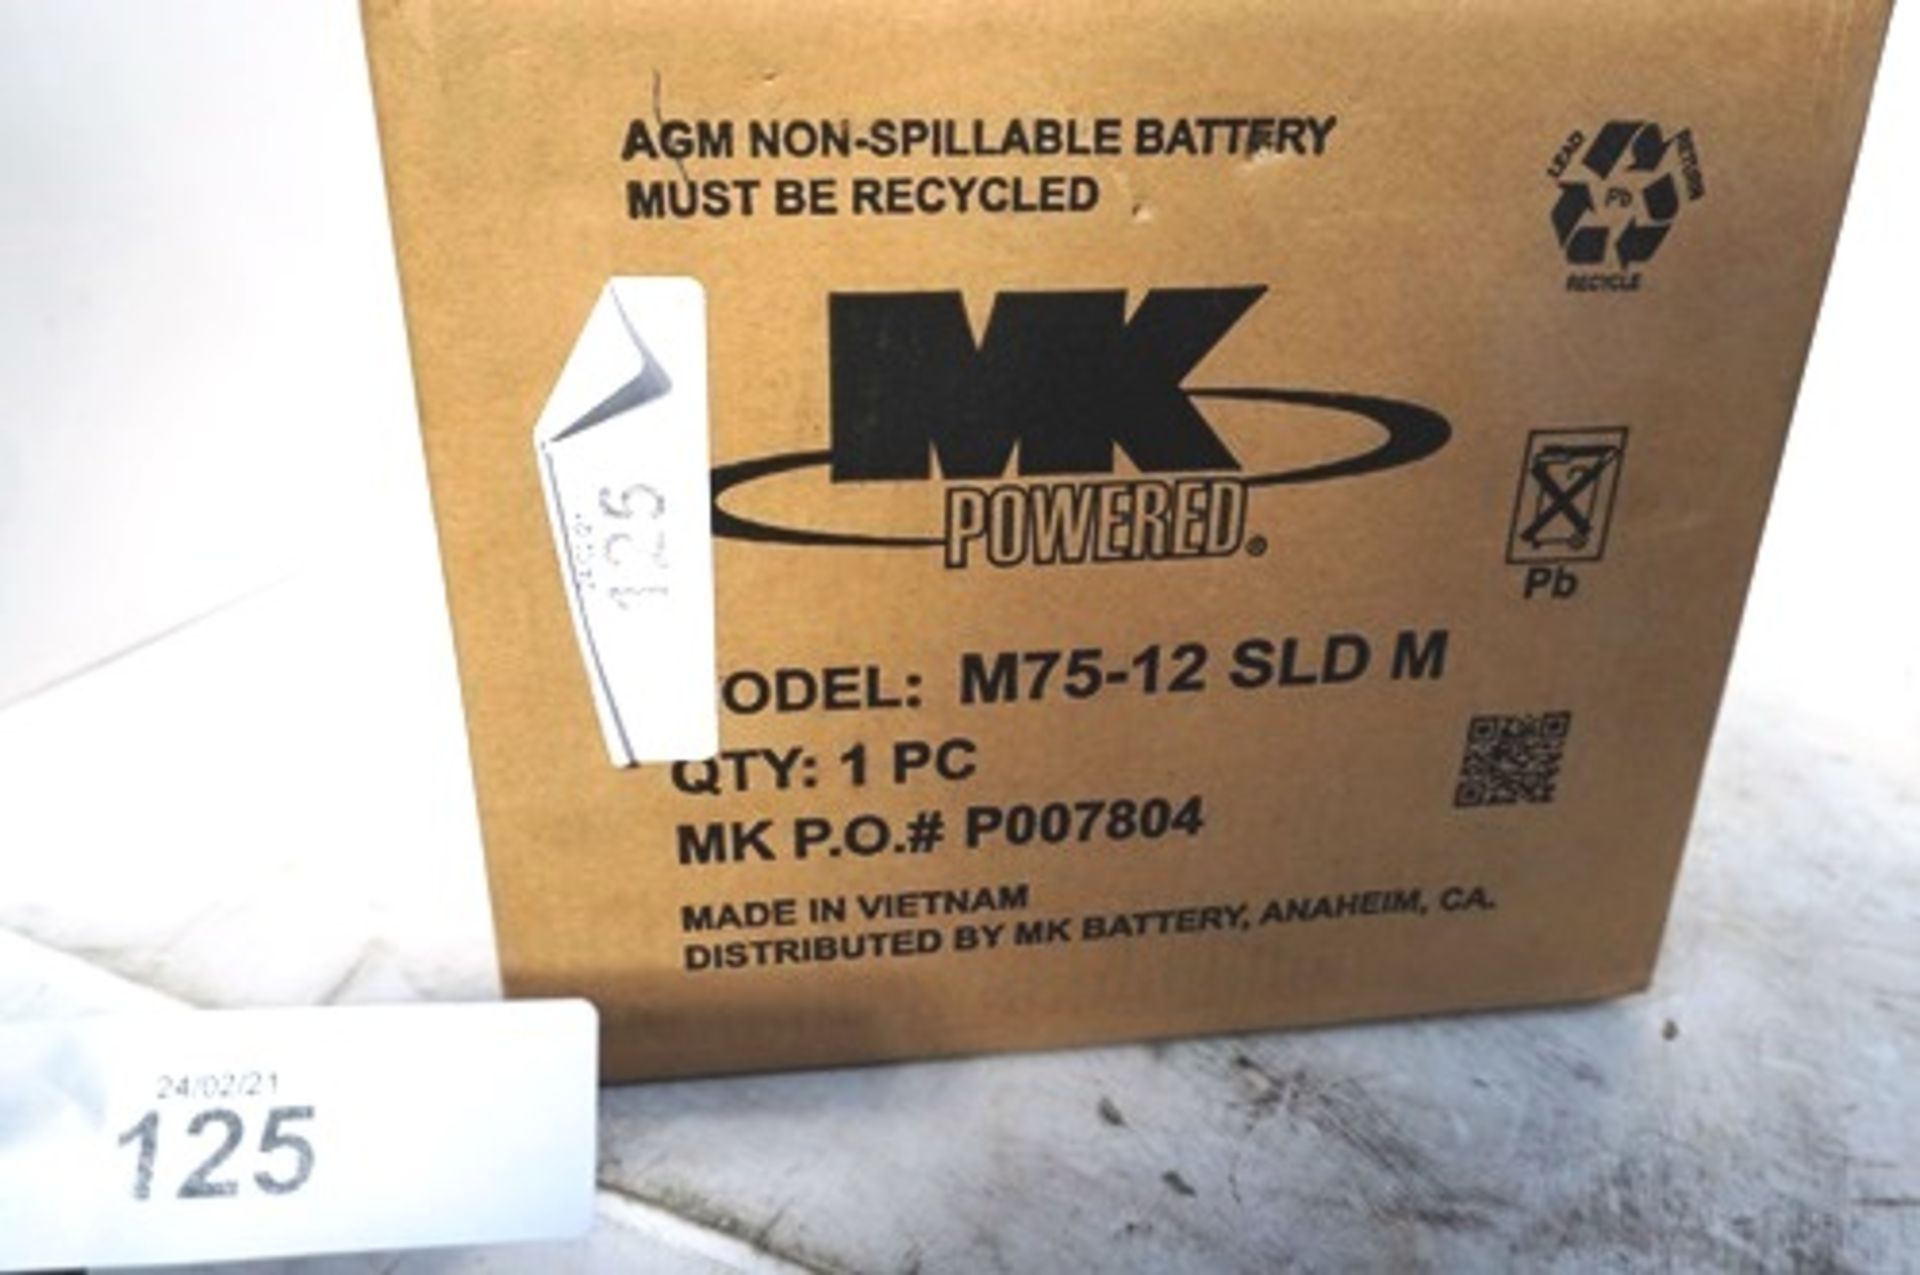 MK Power 12V, 75amph battery, Ref: M75-12 SLDM - New (GS8) - Image 2 of 2